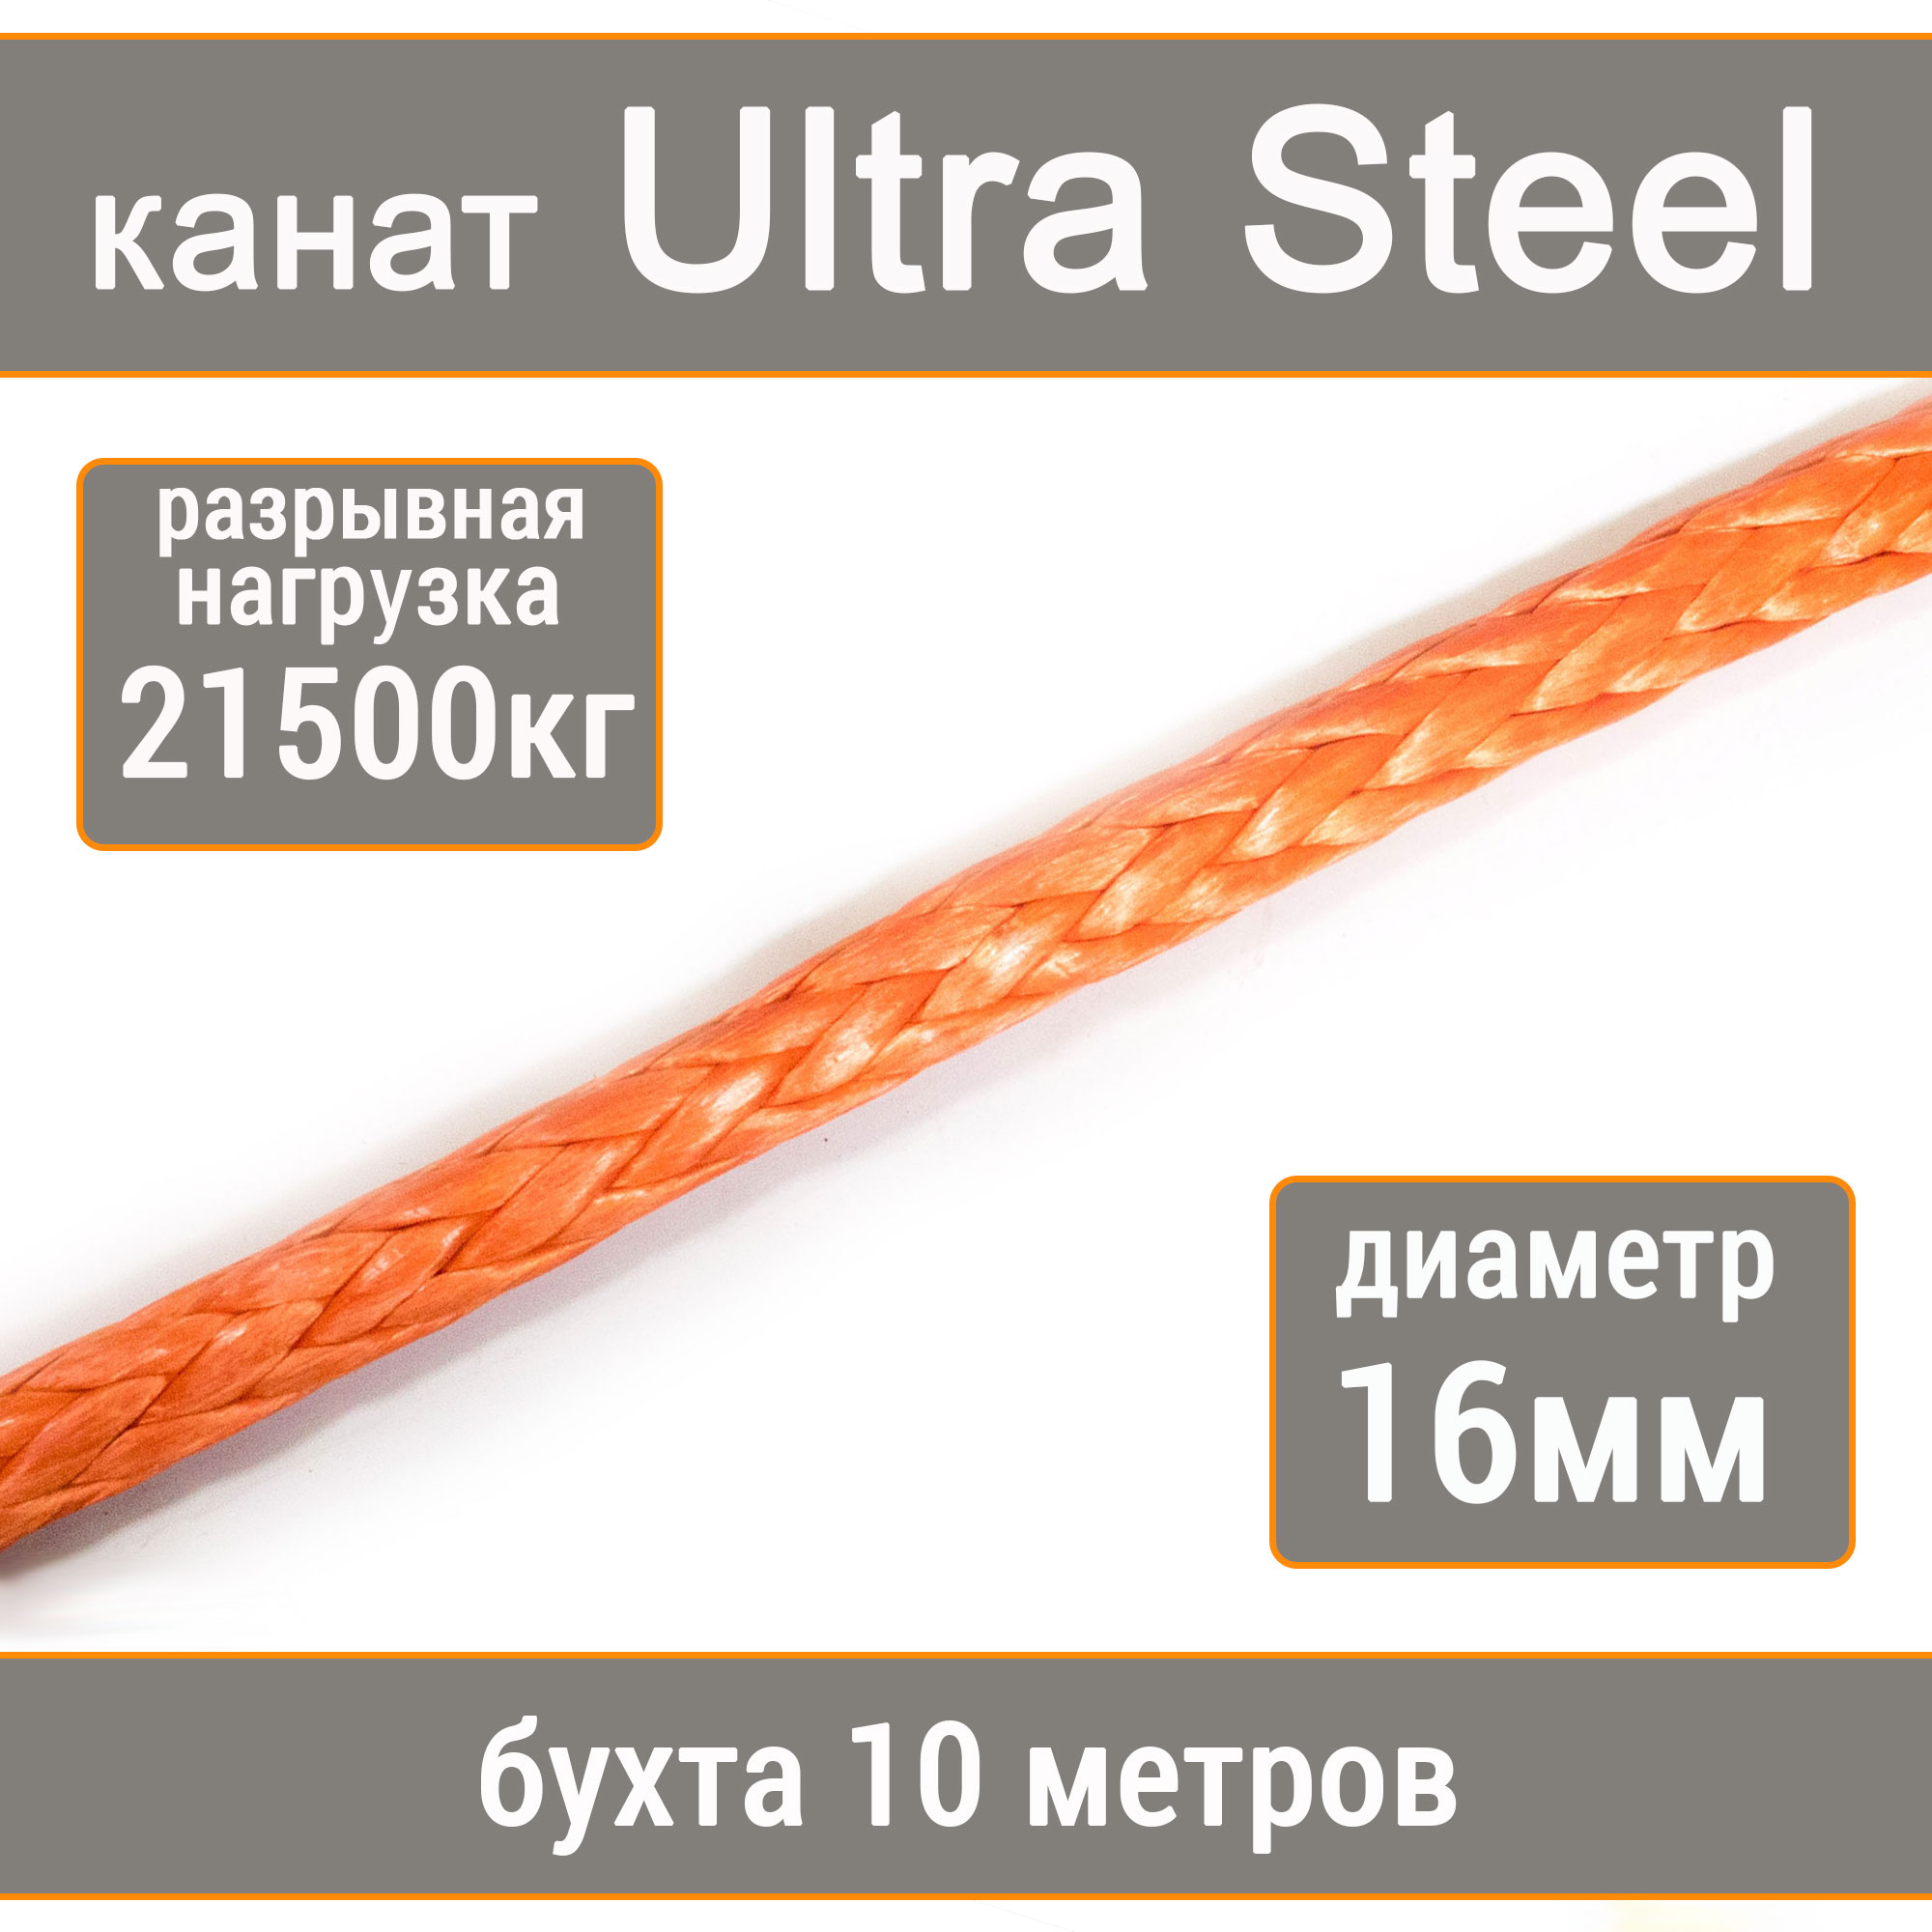 Высокопрочный синтетический канат UTX Ultra Steel 16мм р.н.21500кг, 007654321-1016 кисть косметическая 11 для кремовых теней синтетический ворс